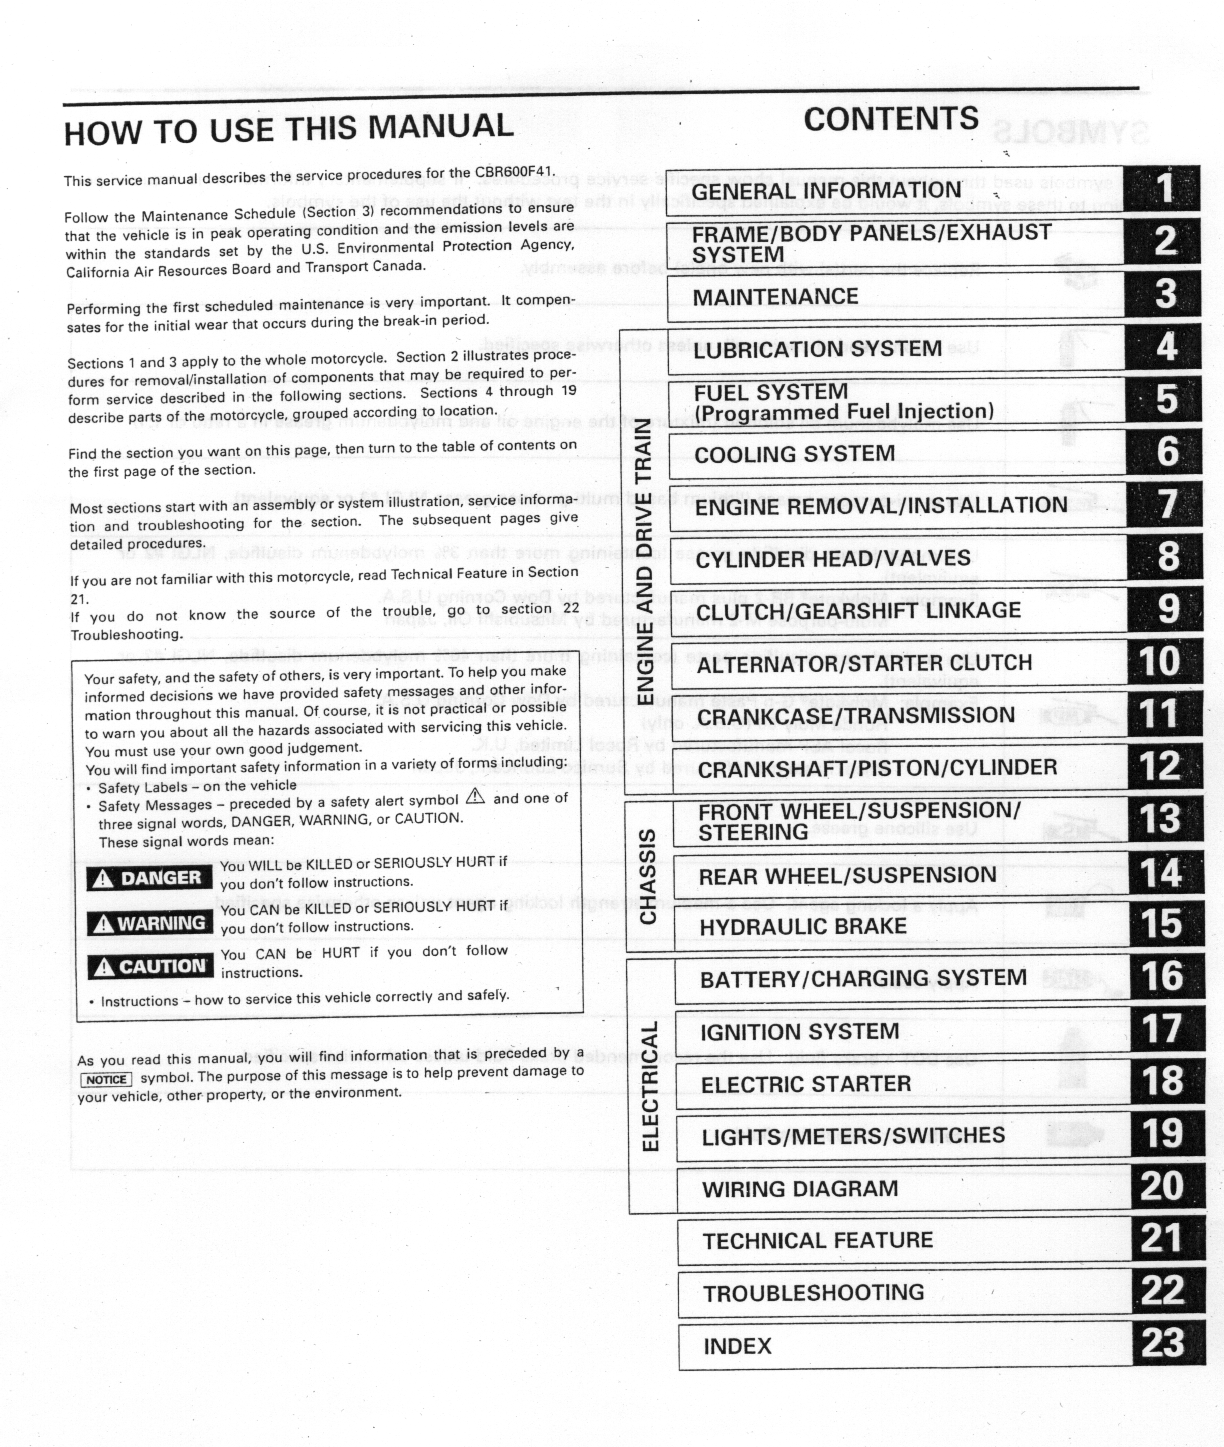 Honda CBR600F4i shop manual Preview image 1